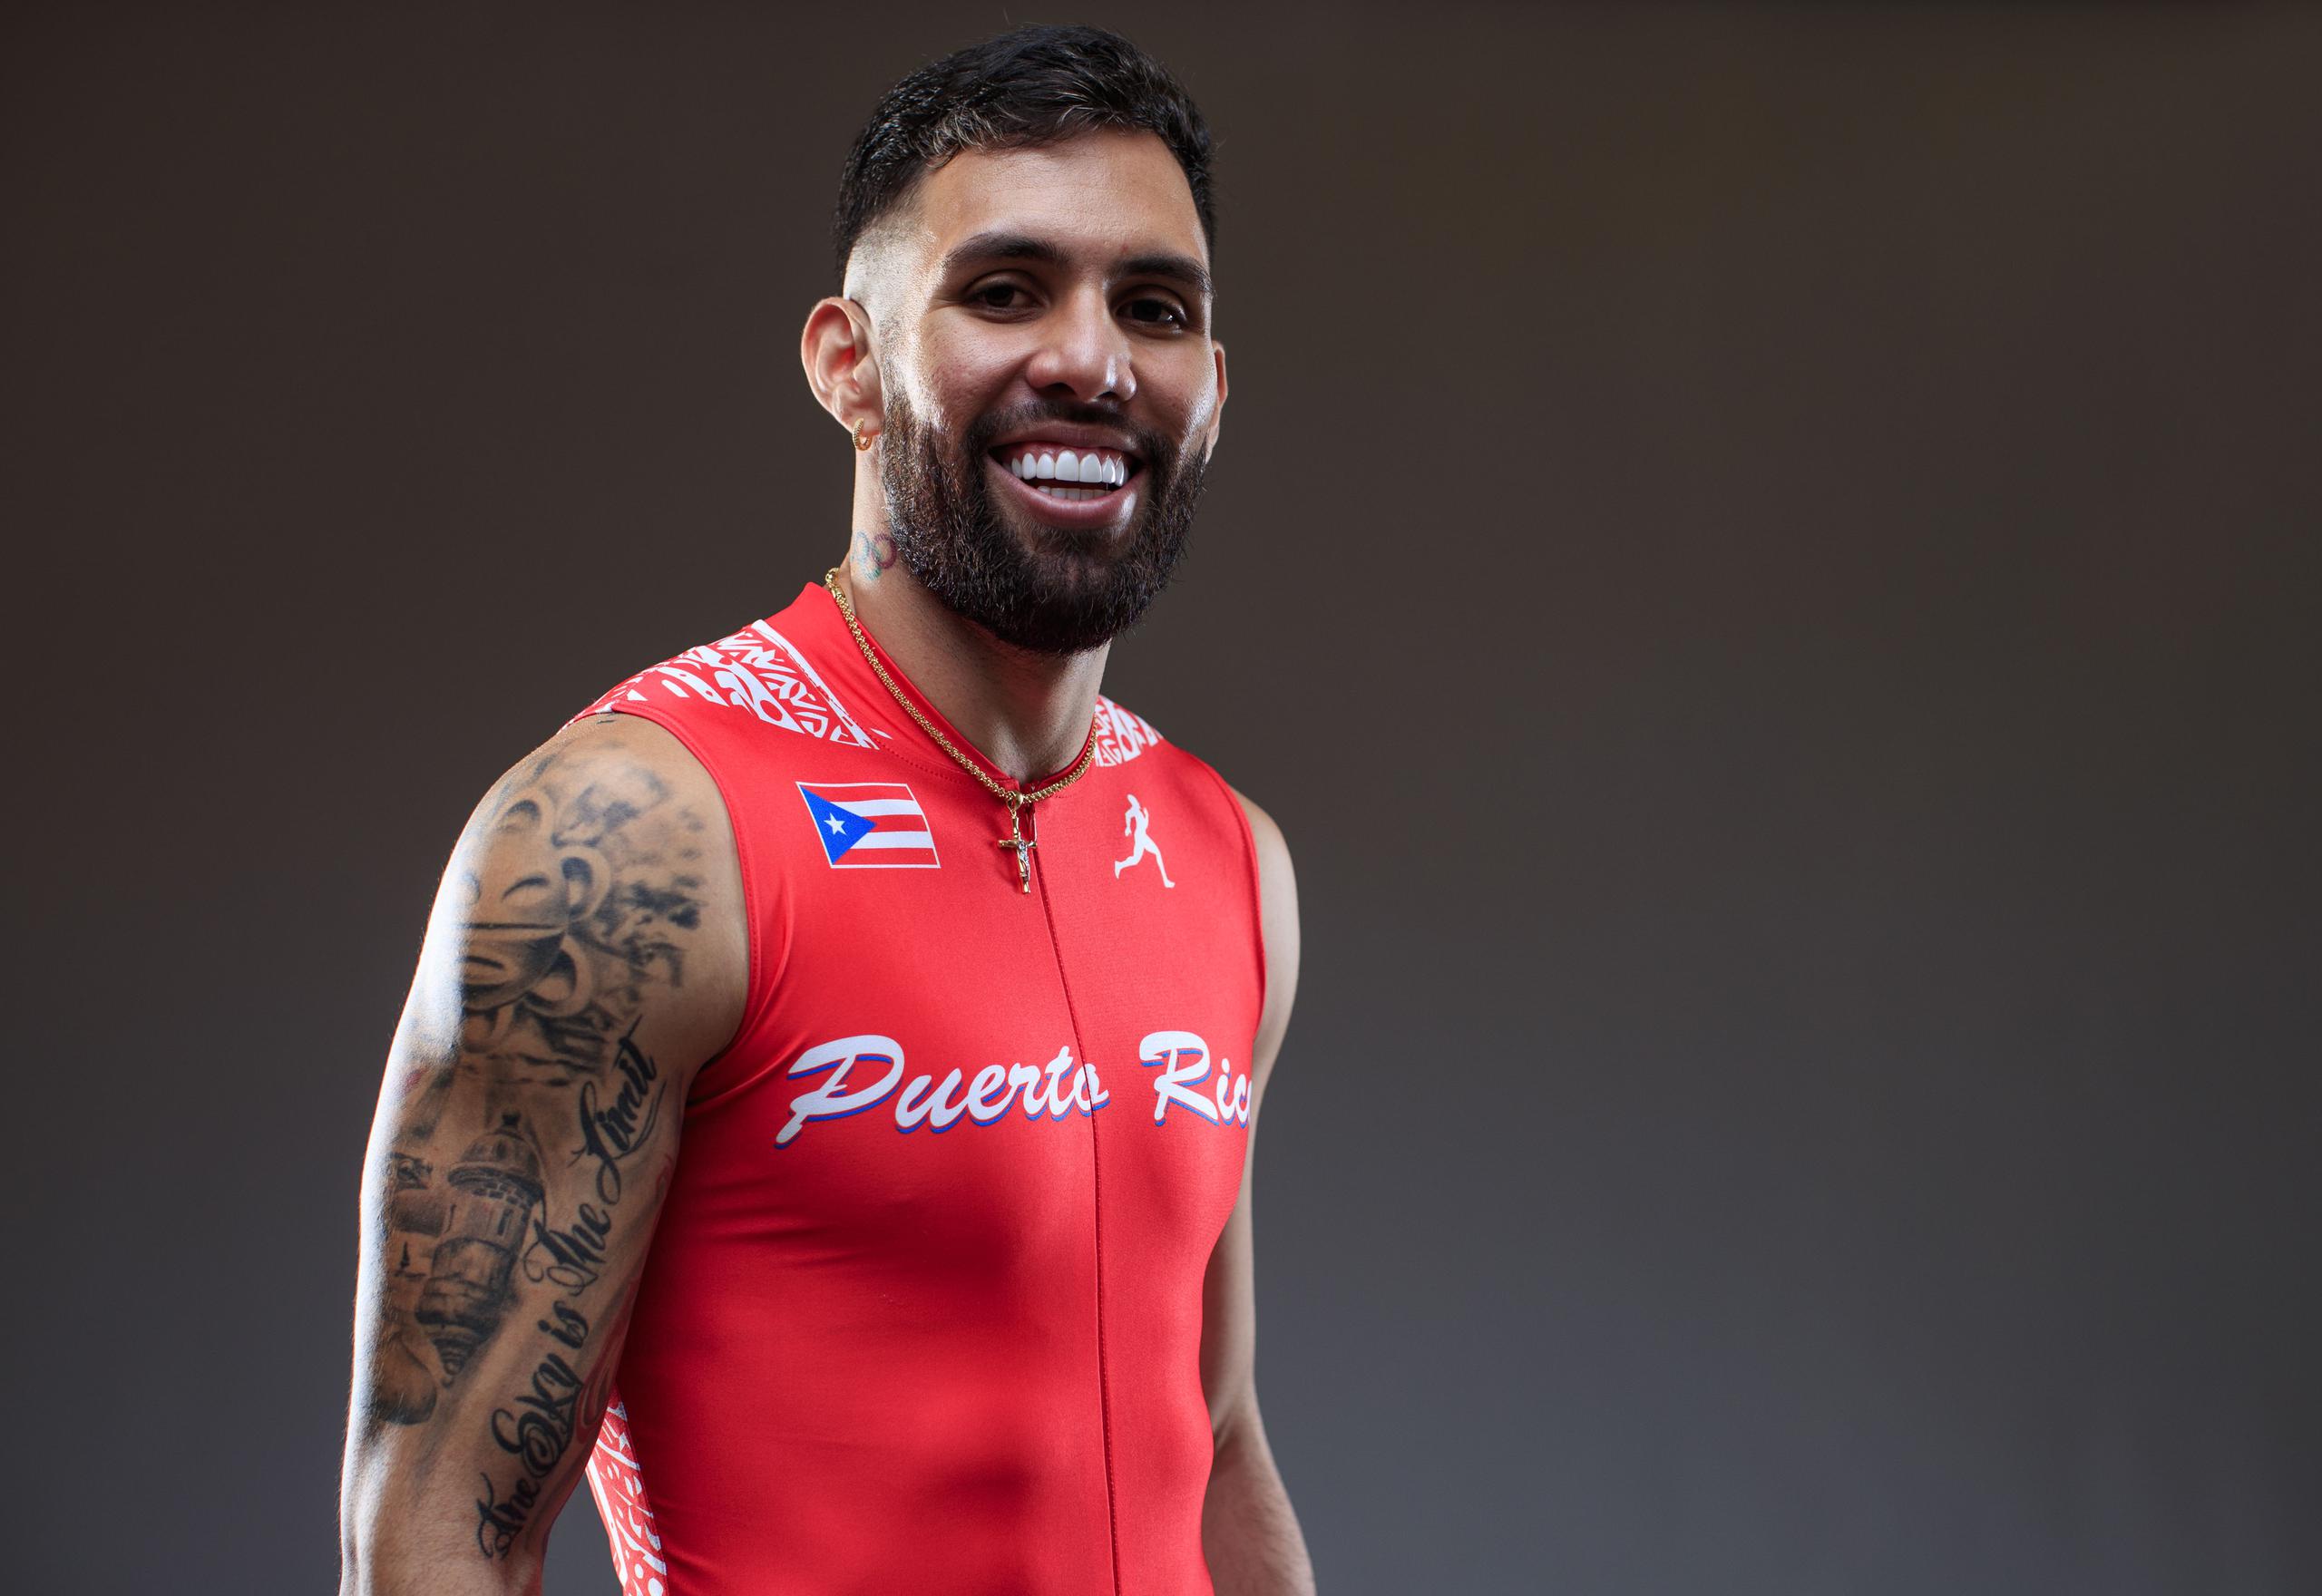 Wesley Vázquez iría a sus terceros Juegos Olímpicos. En este ciclo es medallista en Juegos Centroamericanos y Caribe, así como de Panamericanos, y ocupa el sexto lugar en el ranking mundial de 800 metros.